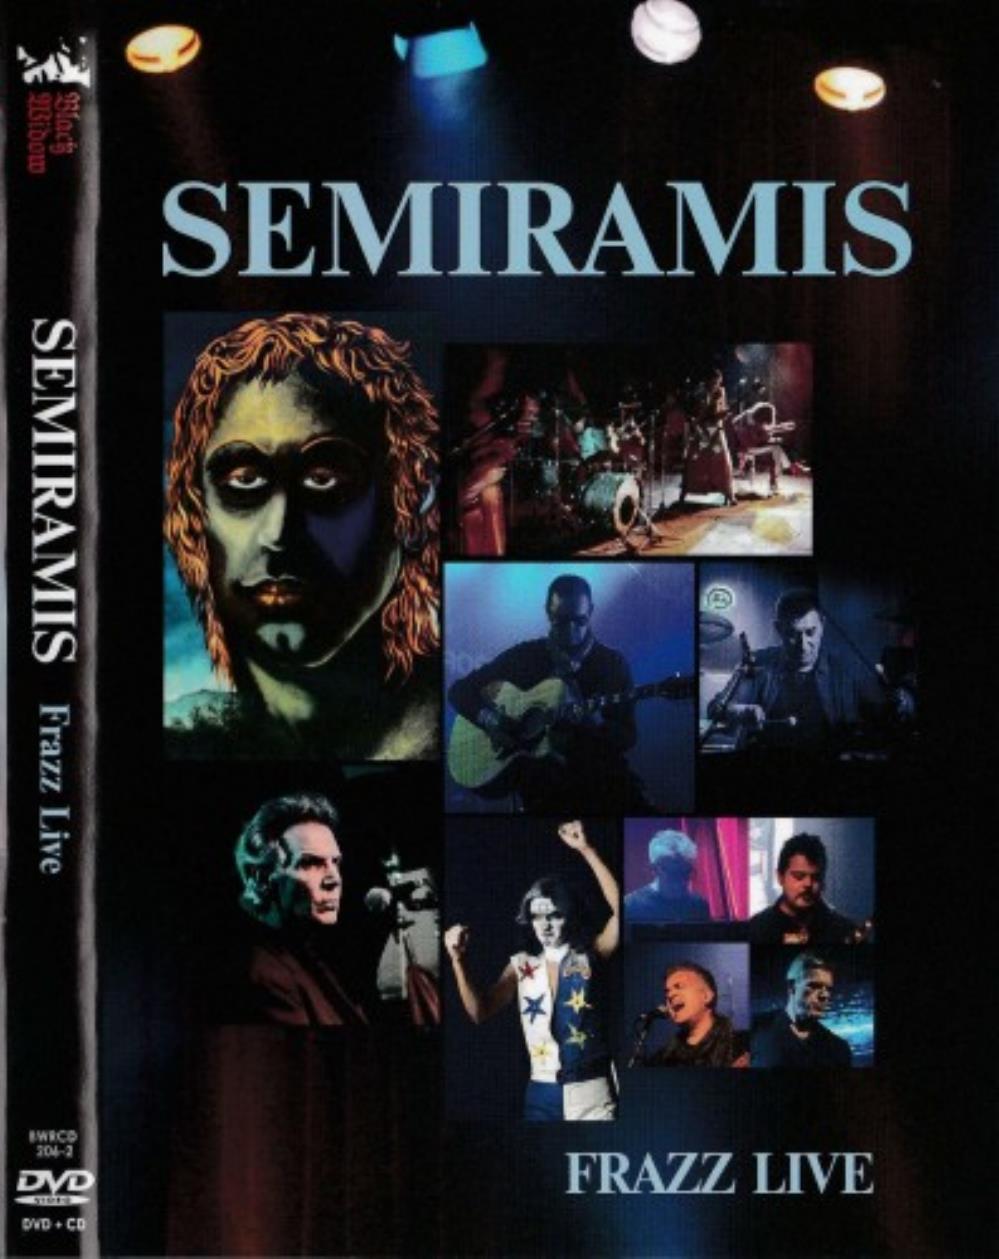 Semiramis Frazz Live album cover